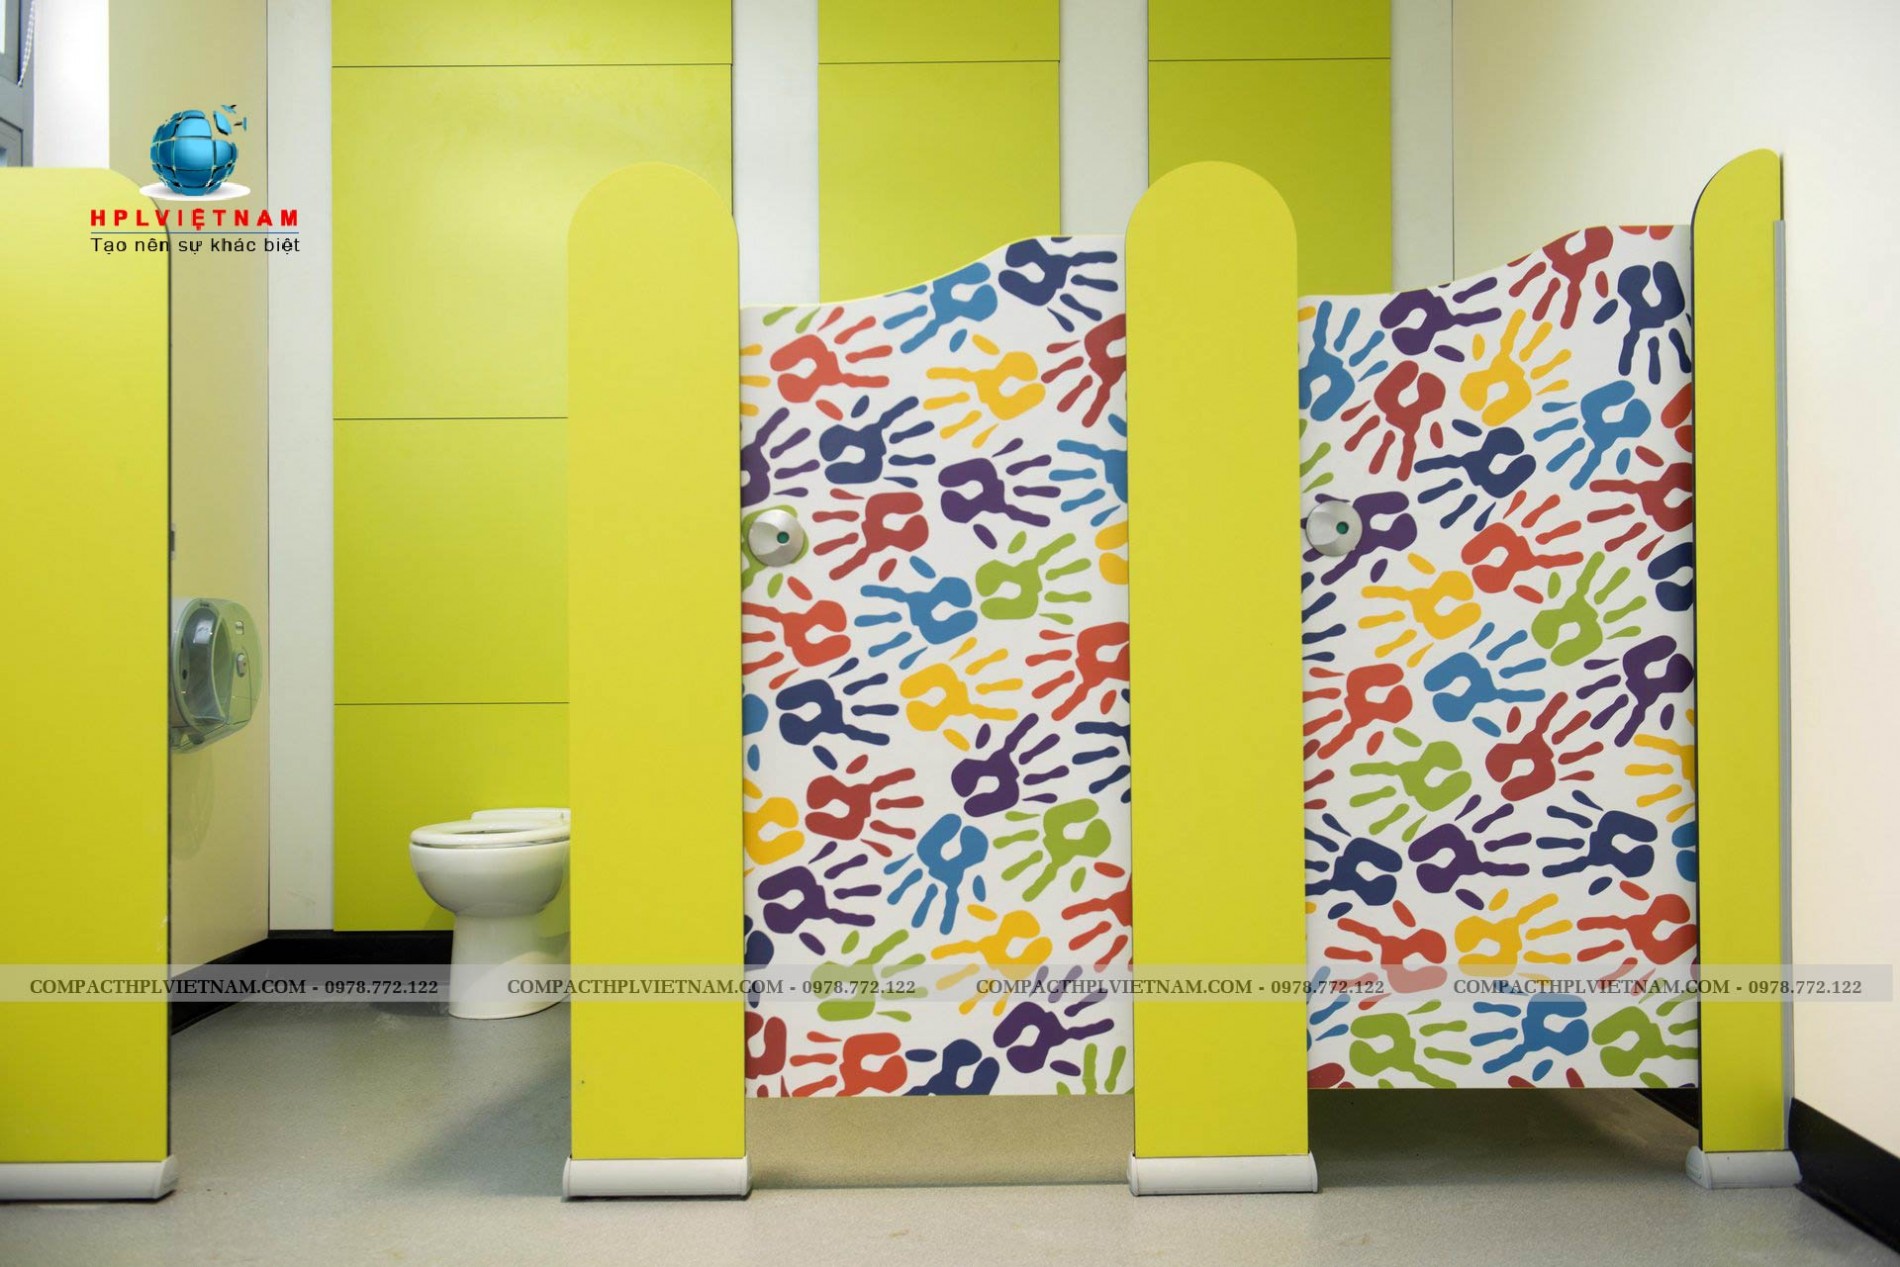 20+ mẫu thiết kế vách ngăn nhà vệ sinh: Với những mẫu thiết kế vách ngăn nhà vệ sinh trường học đẹp mắt, cá tính và tiện nghi, trường học sẽ trở nên sáng tạo và đảm bảo quyền riêng tư cho học sinh. Hãy xem hình ảnh để tìm kiếm ý tưởng thiết kế vách ngăn phù hợp cho trường học của bạn.